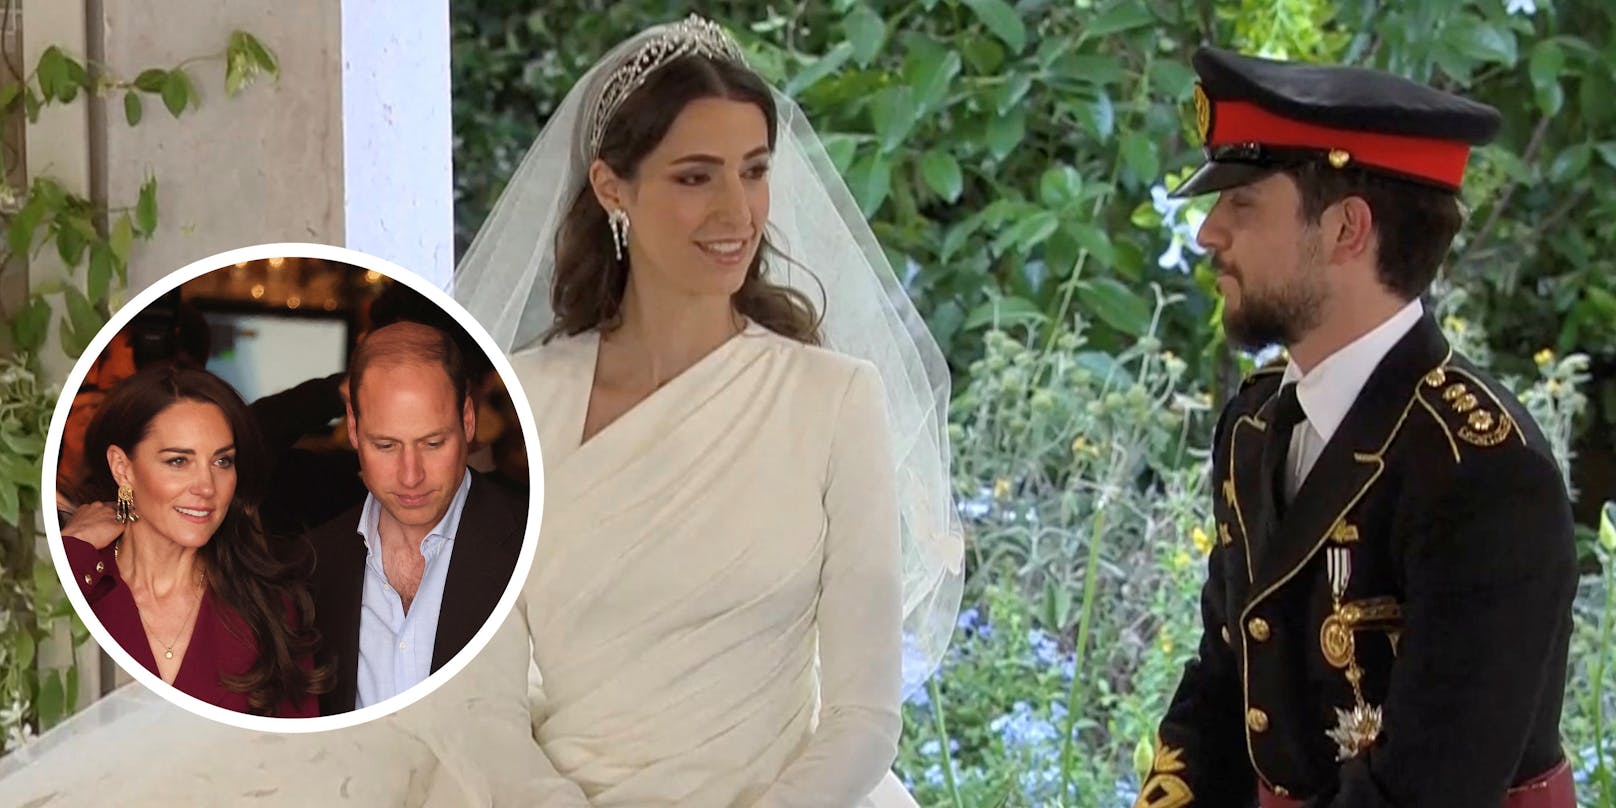 Am 1. Juni fand die royale Hochzeit von Kronprinz Hussein von Jordanien mit seiner Verlobten Rajwa Al Saif statt –&nbsp;inklusive Kate und William.